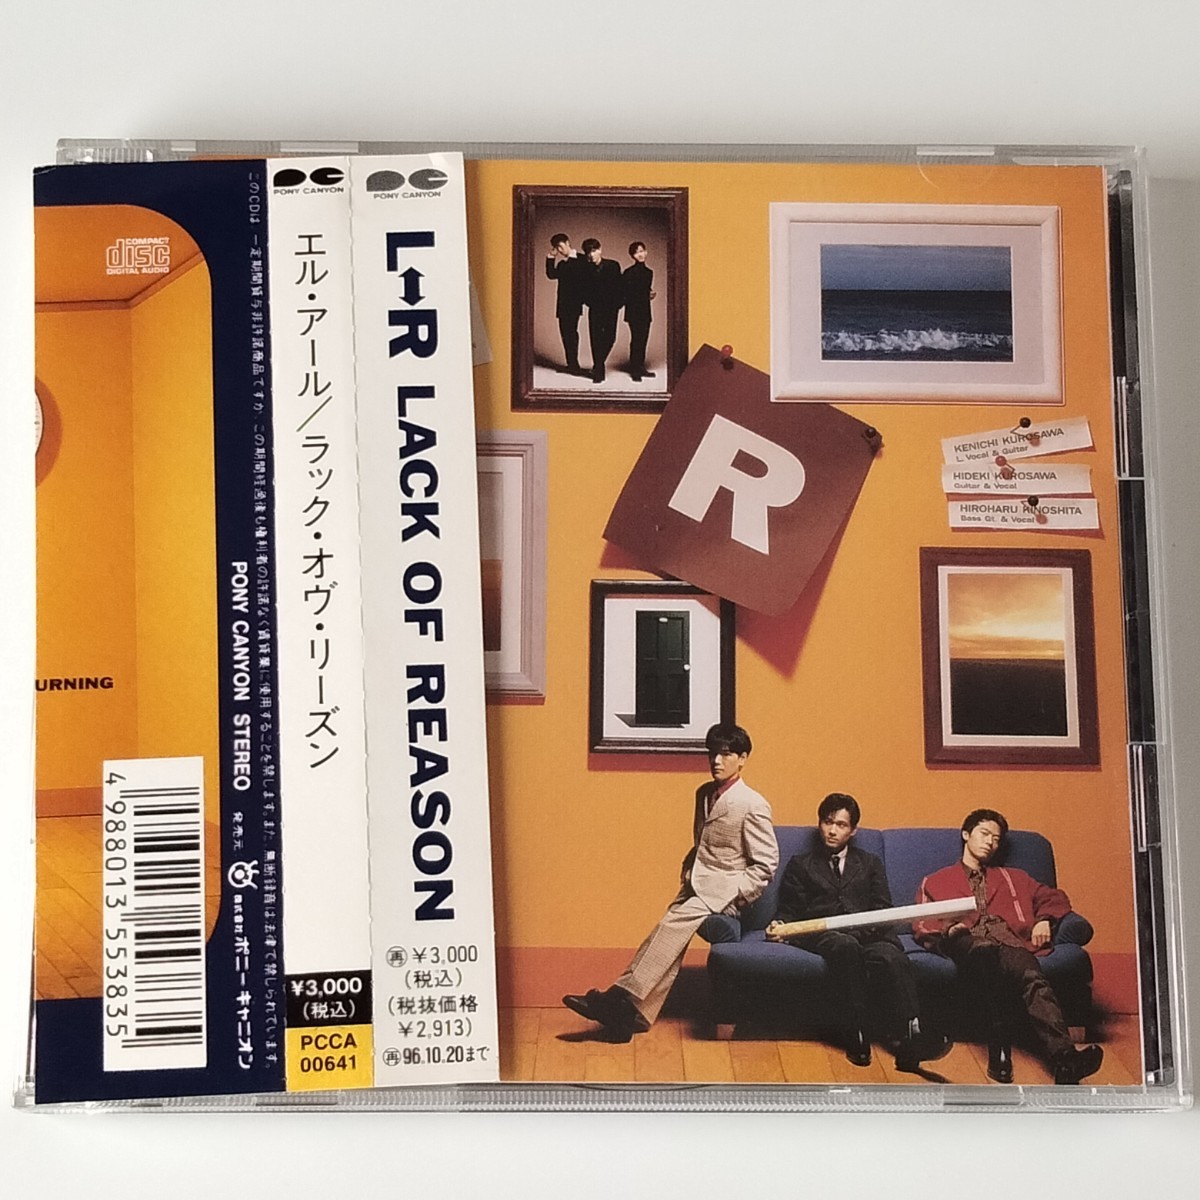 【帯付CD】L⇔R/LACK OF REASON(PCCA-00641)エルアール/ラック・オブ・リーズン/HELLO, IT'S ME/REMEMBER/黒沢健一/1997年_画像1